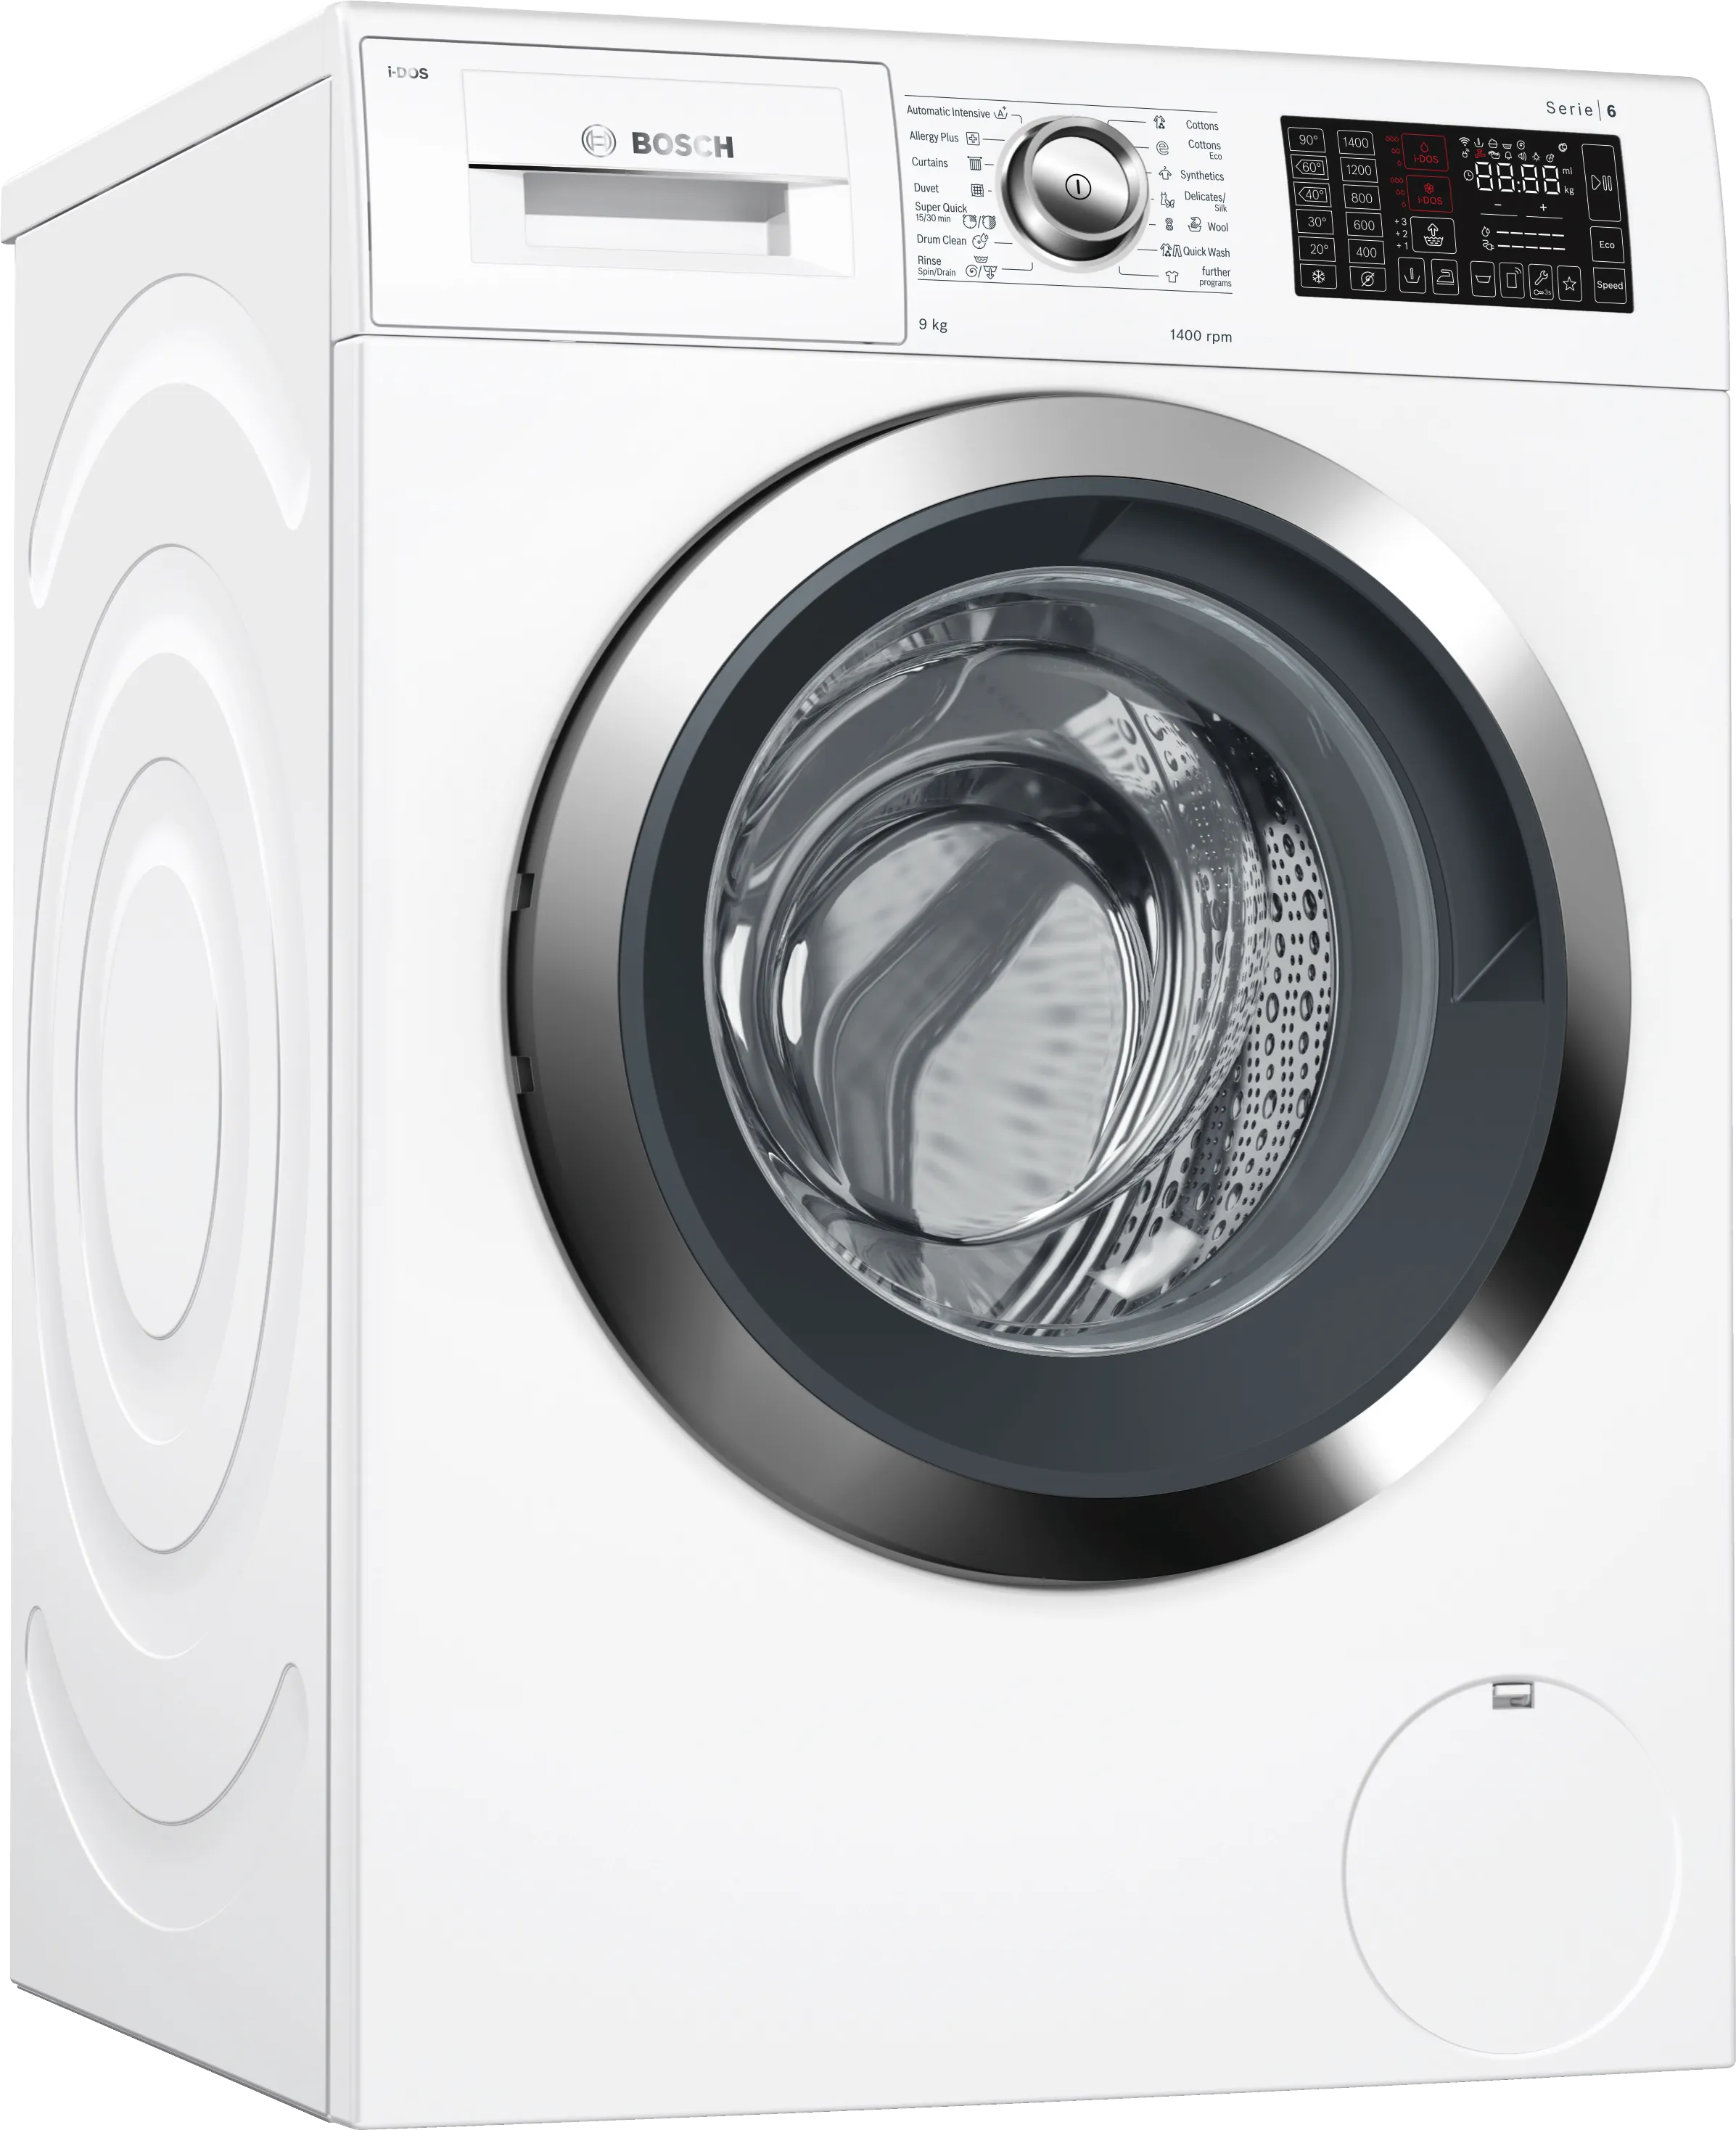 Series 6 Washing machine, front loader 9 kg 1400 rpm 